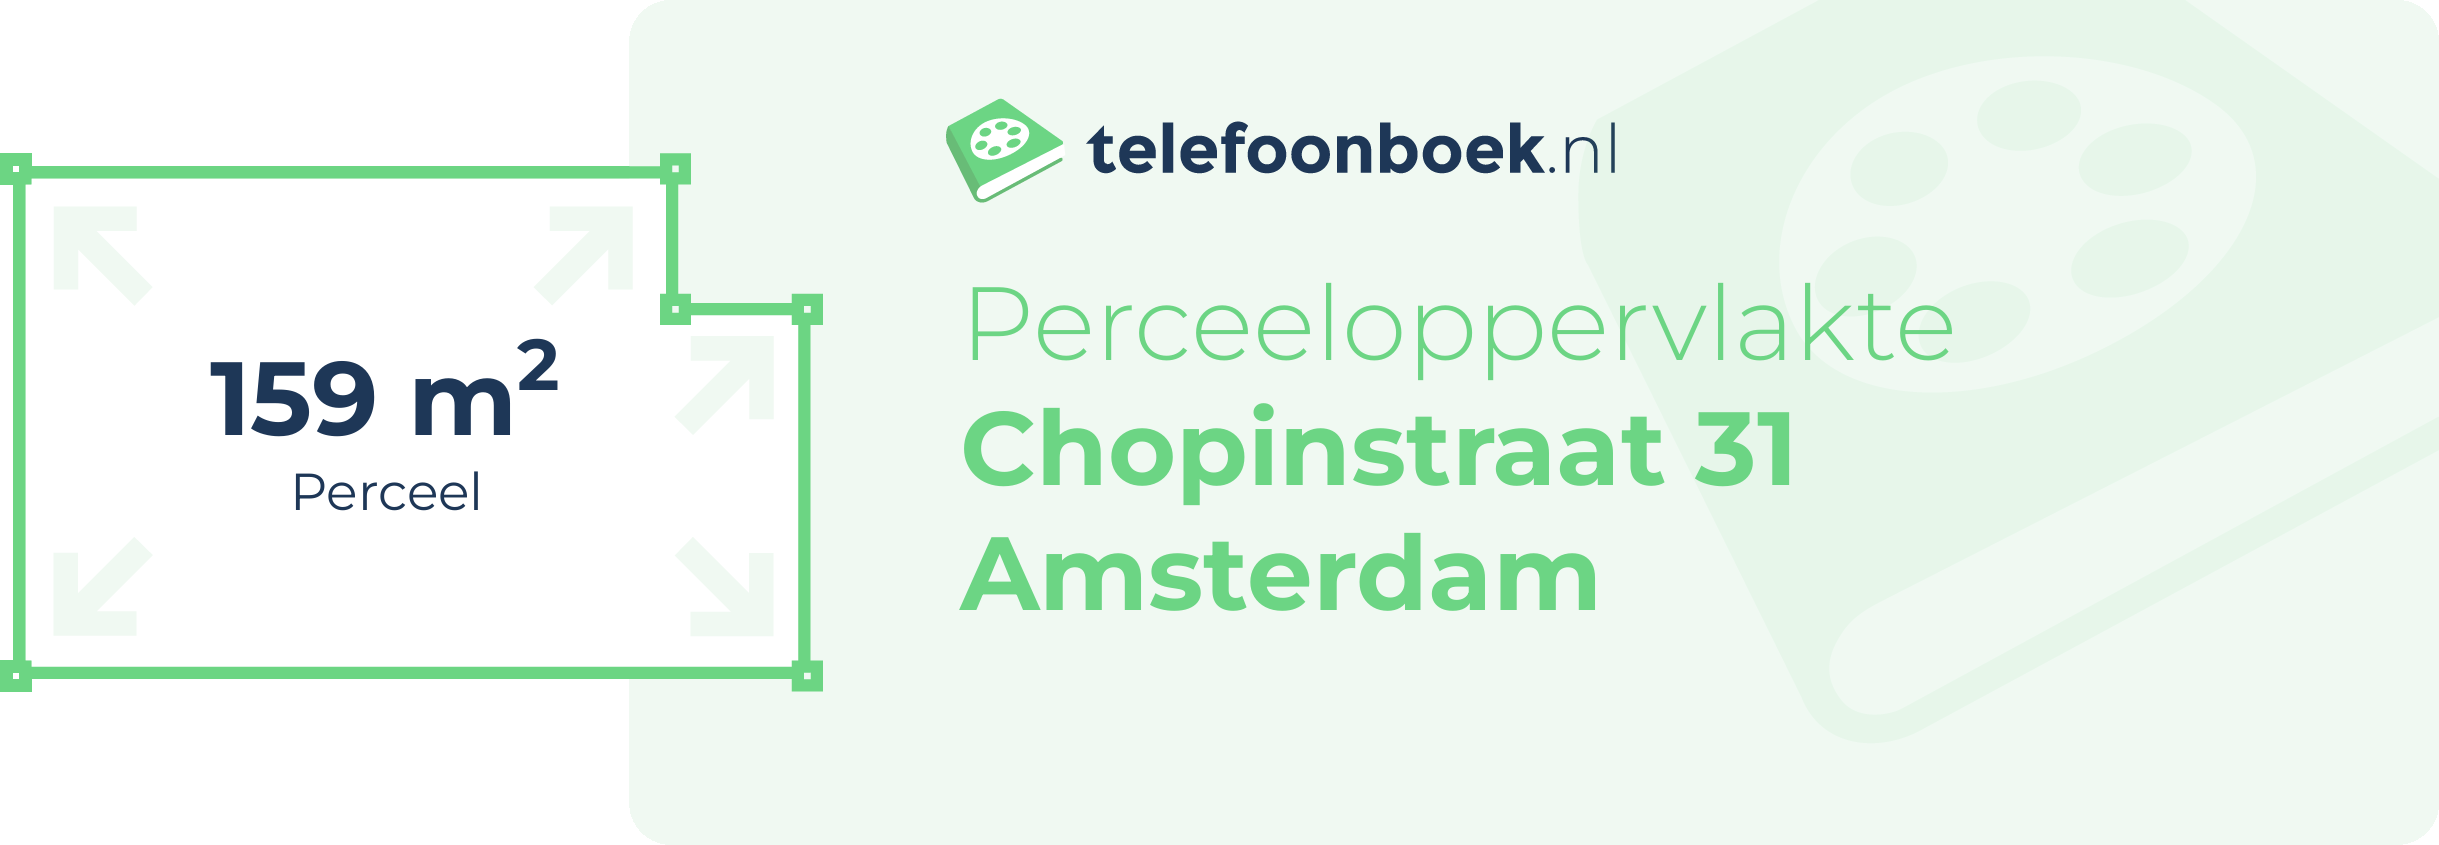 Perceeloppervlakte Chopinstraat 31 Amsterdam